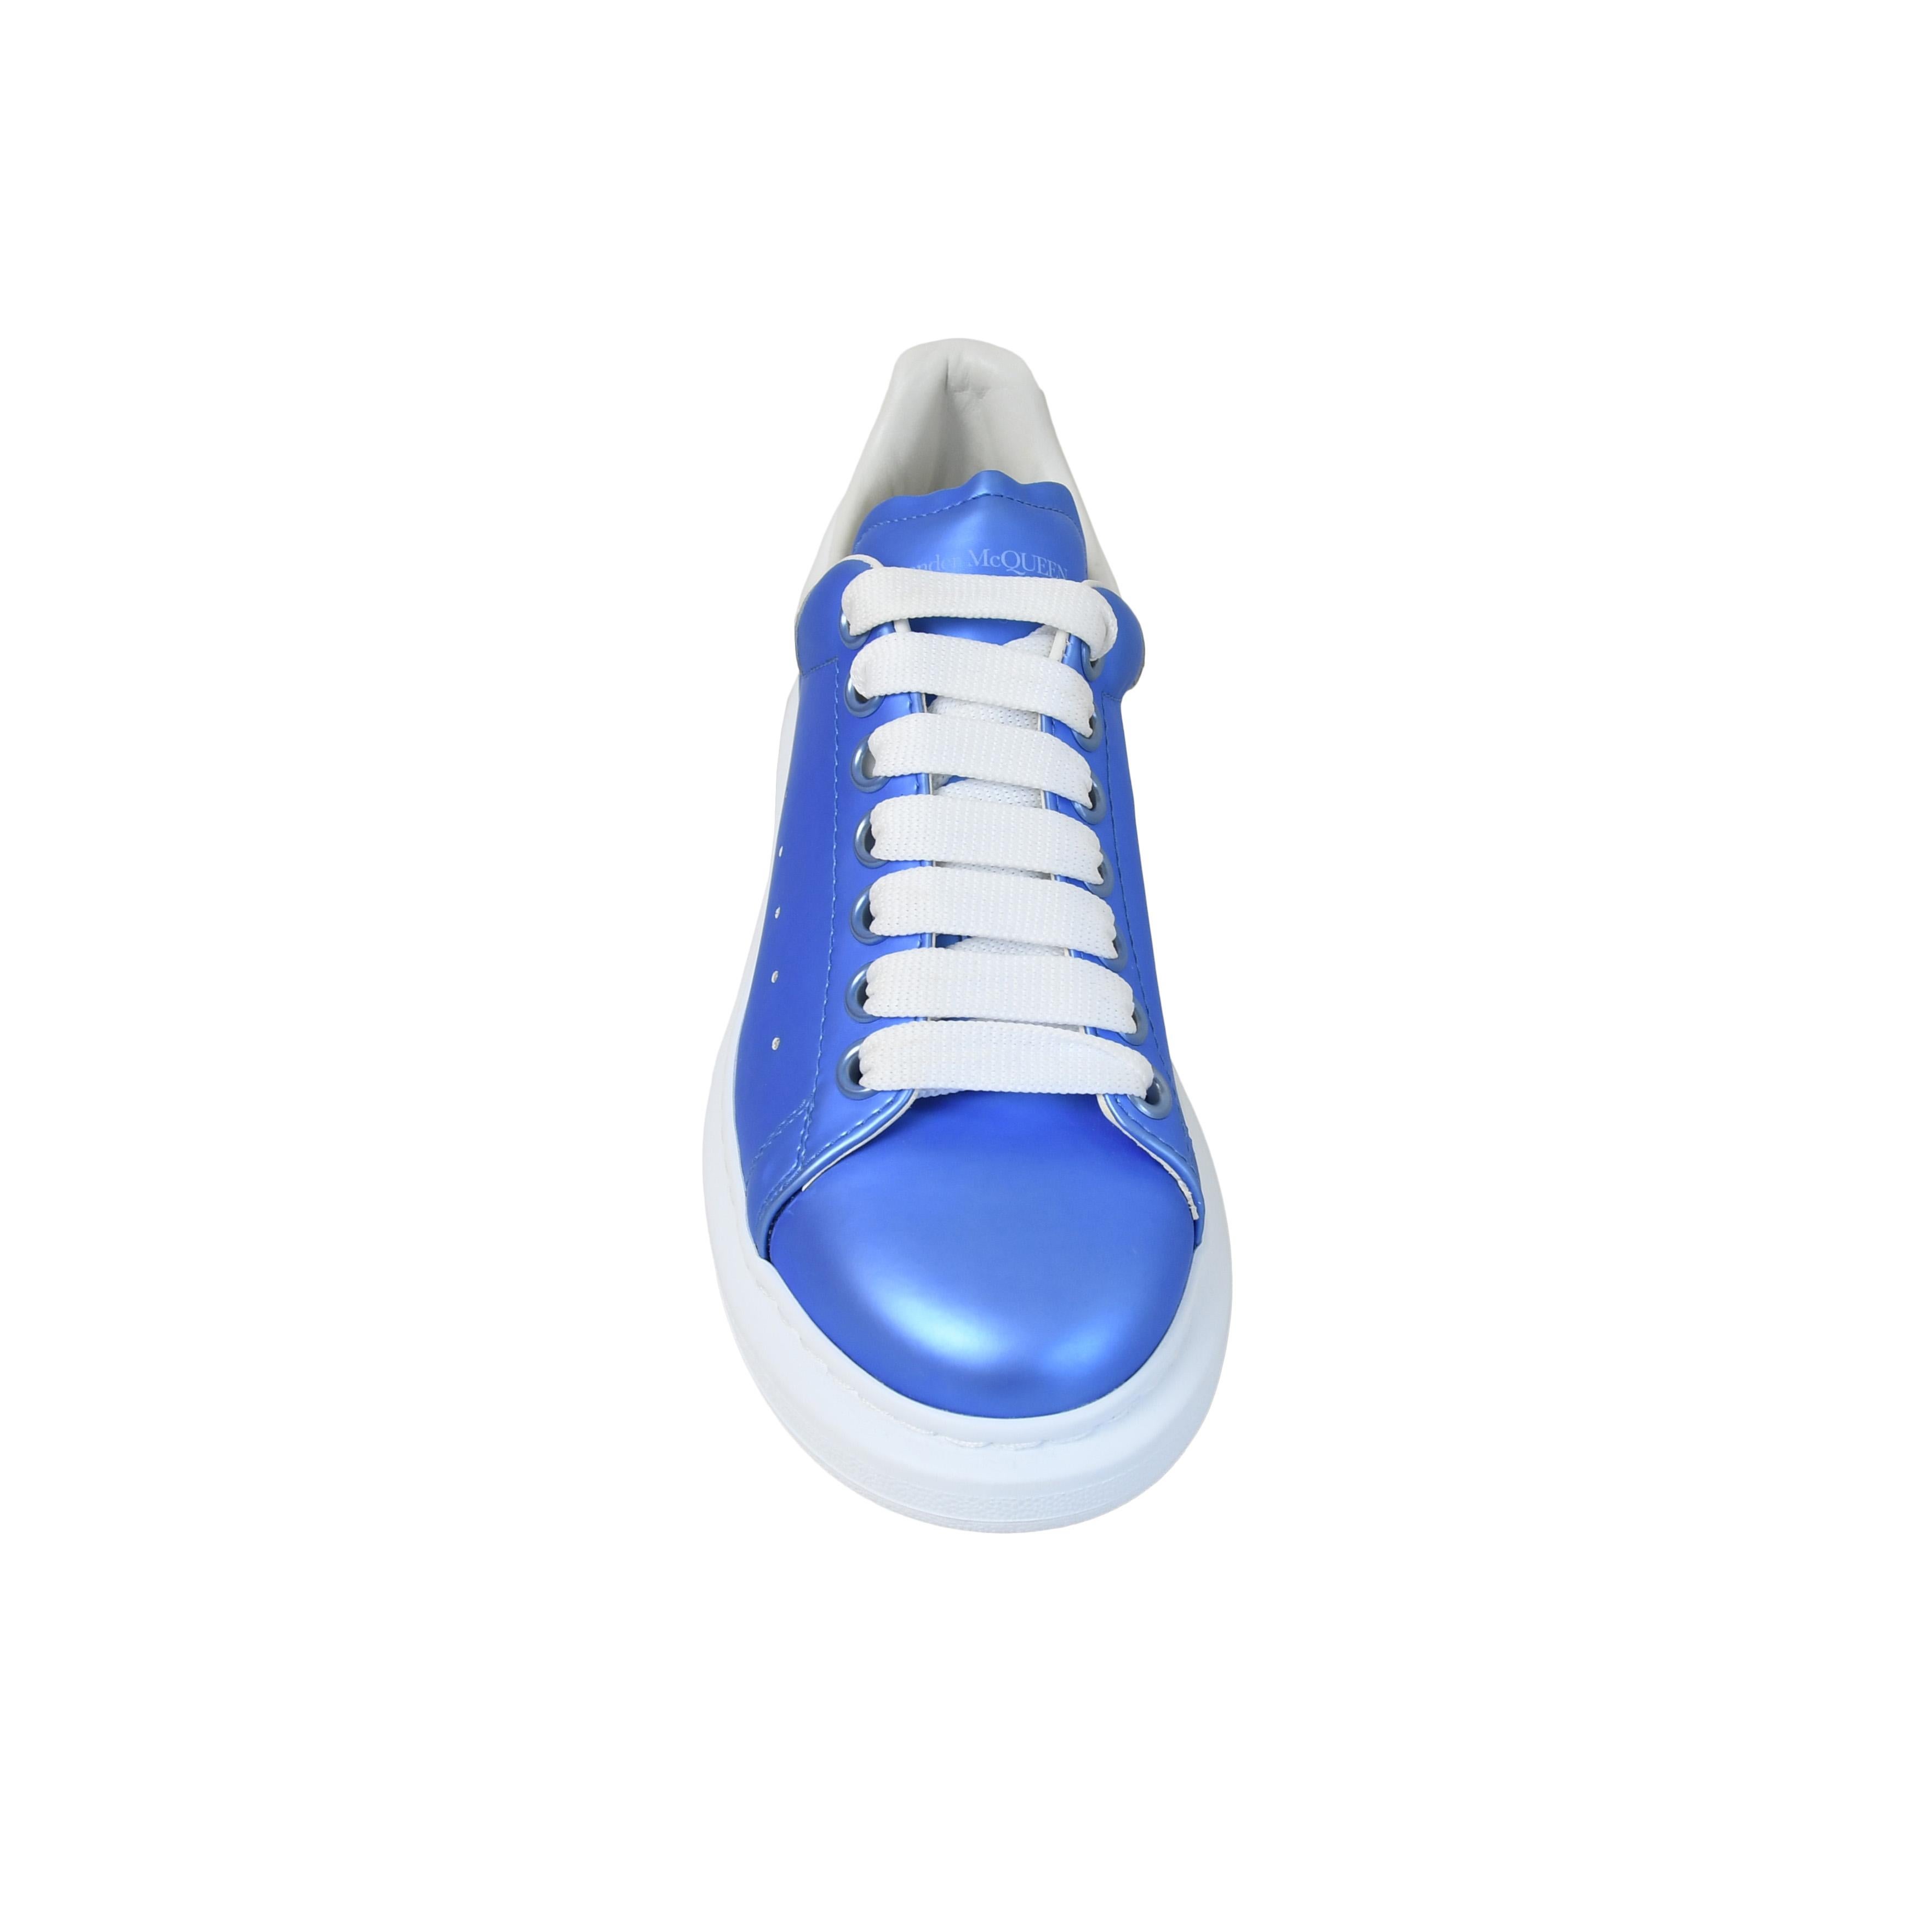 cornflower blue shoes